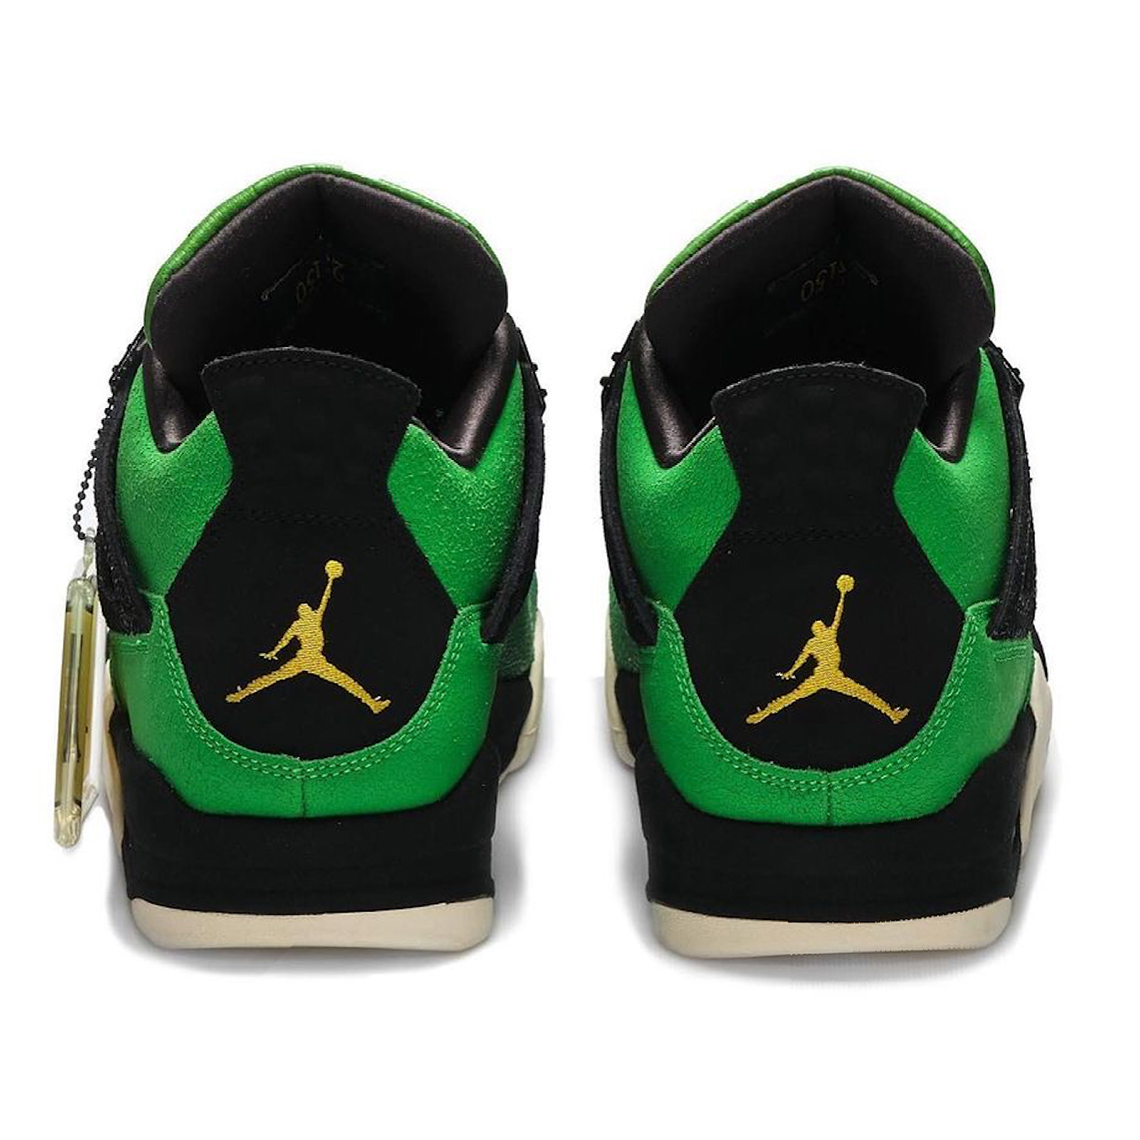 Air Jordan 4 Retro "Manila" Release Date | SneakerNews.com